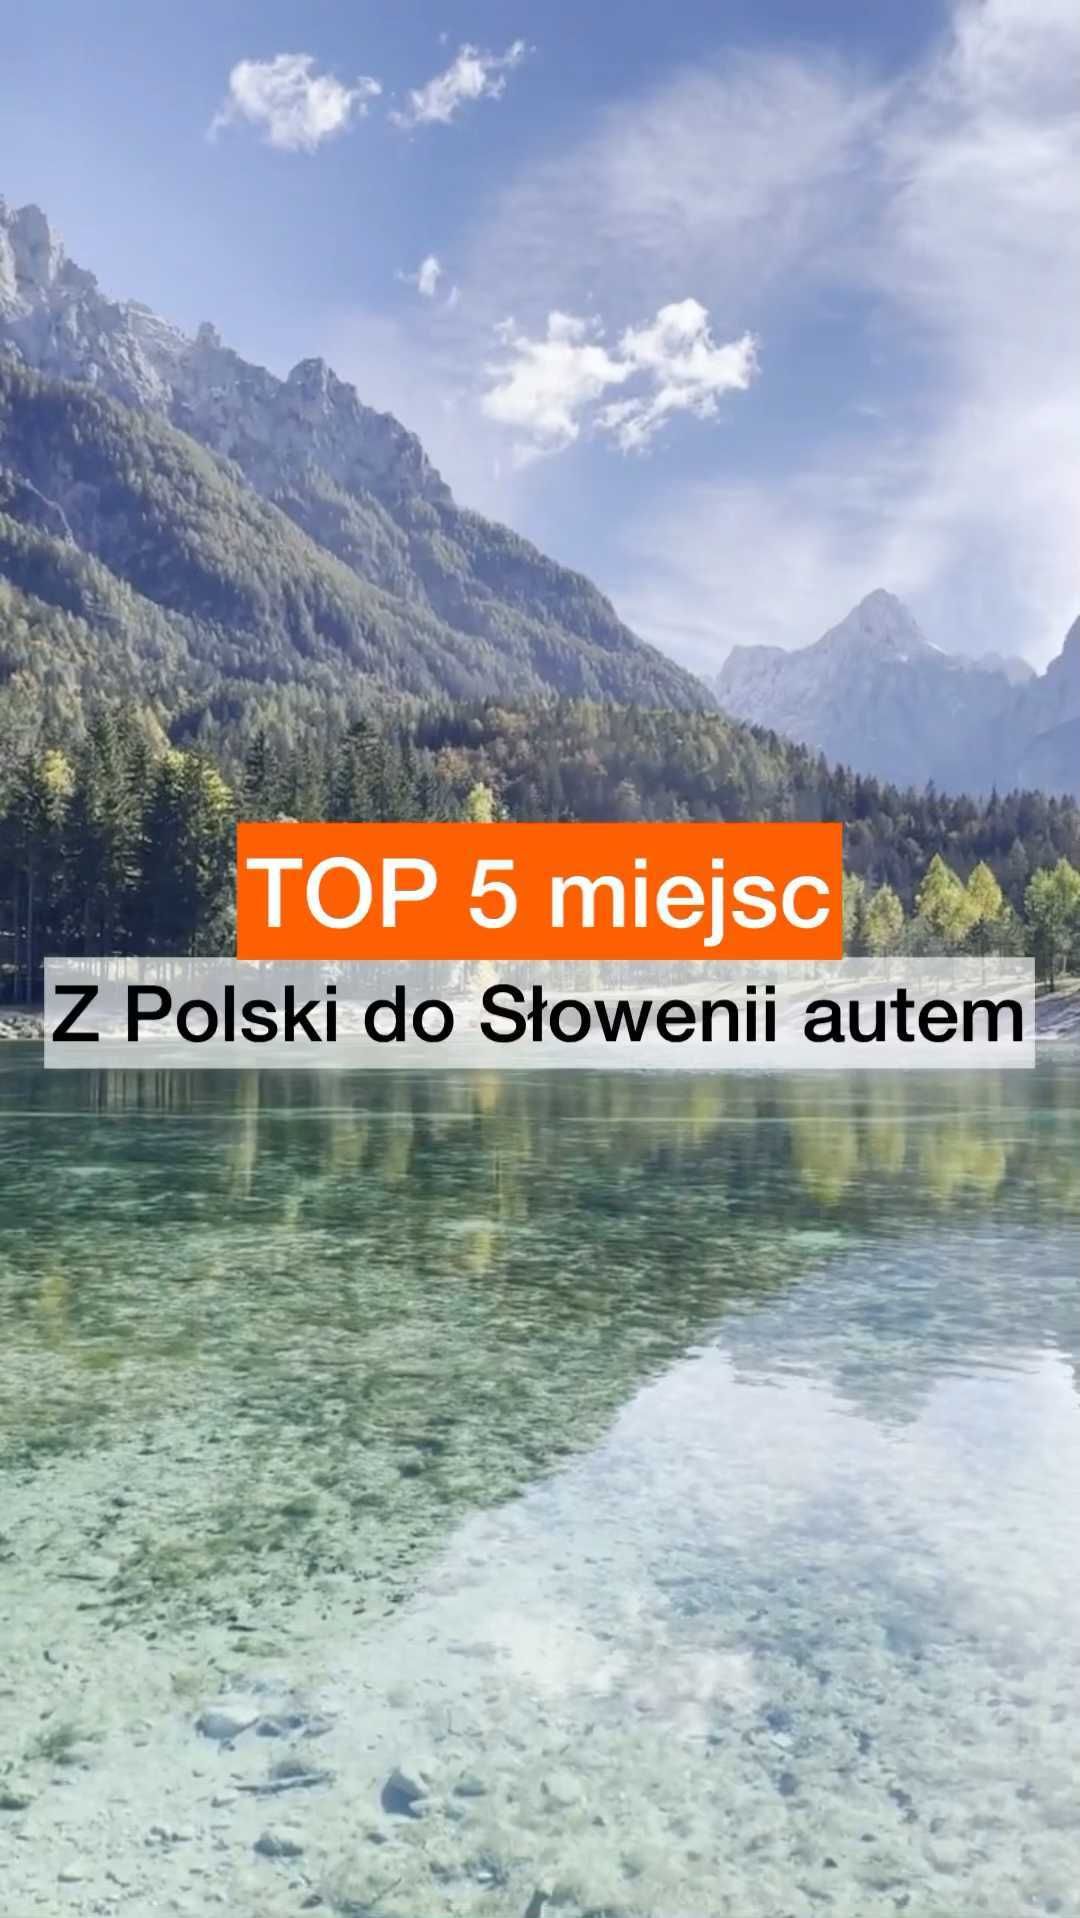 Magiczne jeziora polodowcowe, wodospady, bajkowe jaskinie, klimatyczne portowe miasteczka, spektakularne zamki. Słowenia potrafi zaskoczyć. Co dodasz do siebie?  #ifeelslovenia #slovenia #TOP5 #travelist #słowenia #zwiedzanie #lublana #PredjamskiGrad #Bohnij #Bled #bledlake #beautiful view